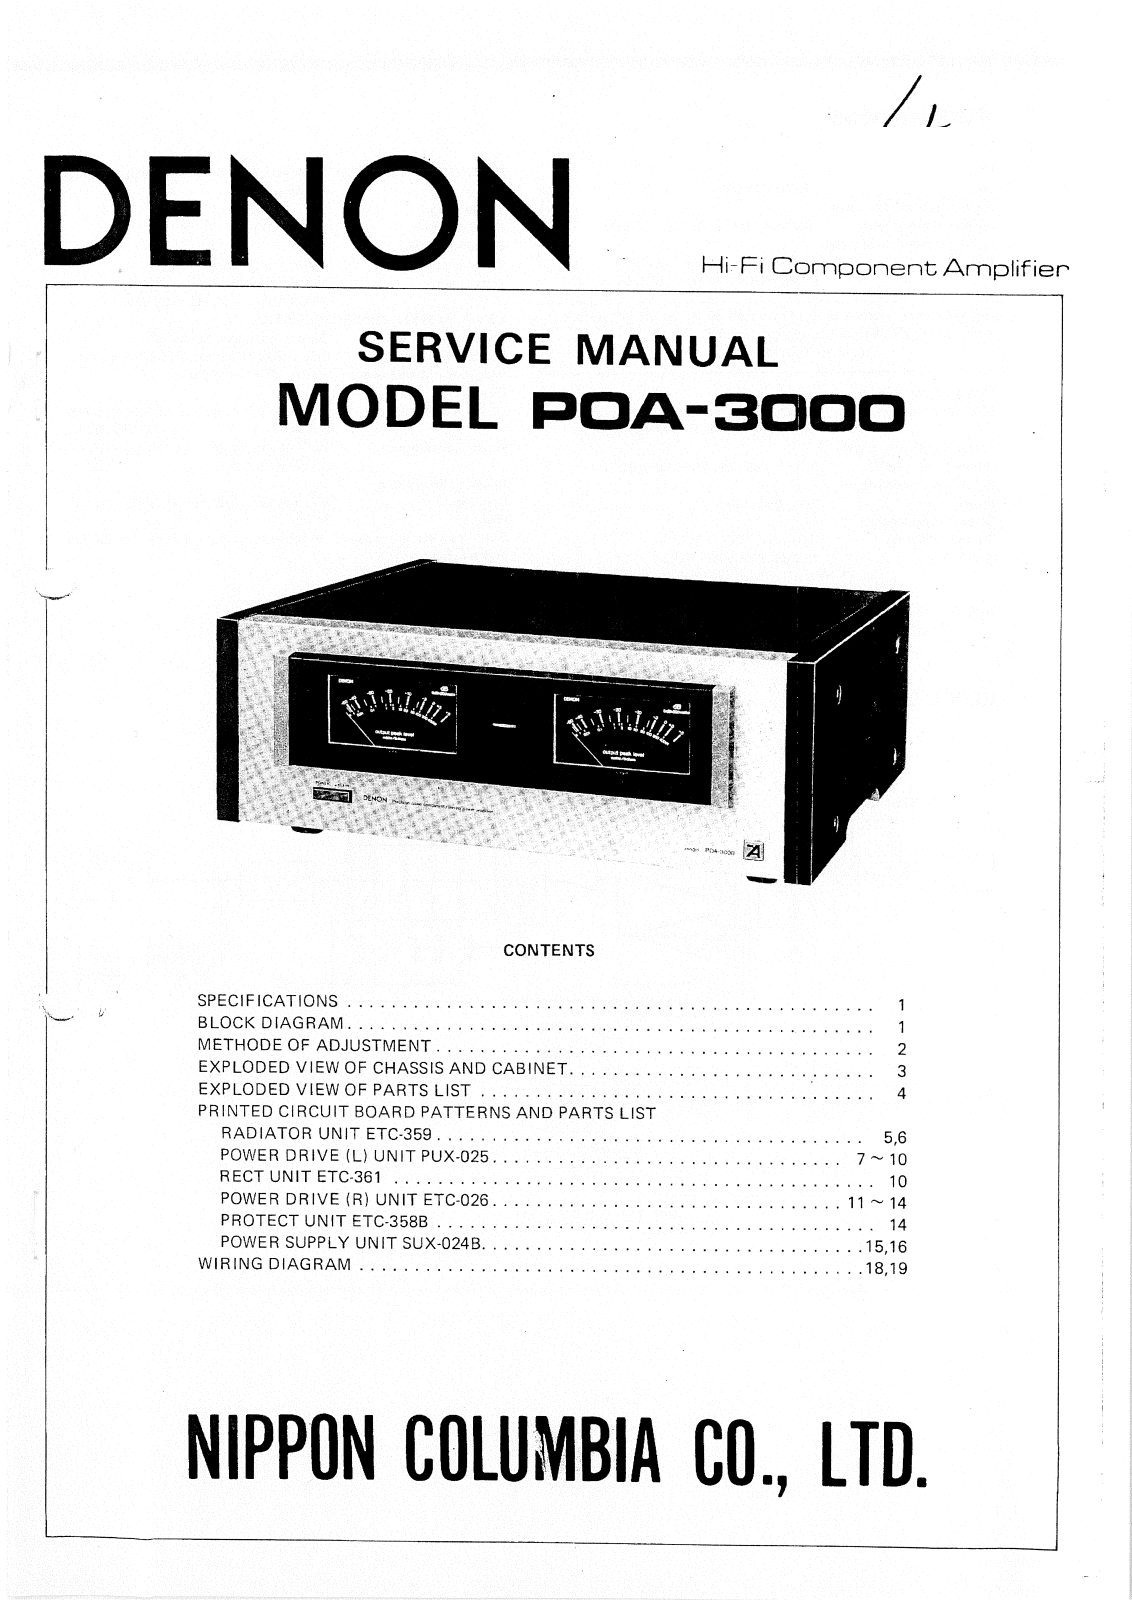 Denon POA-3000 Service Manual